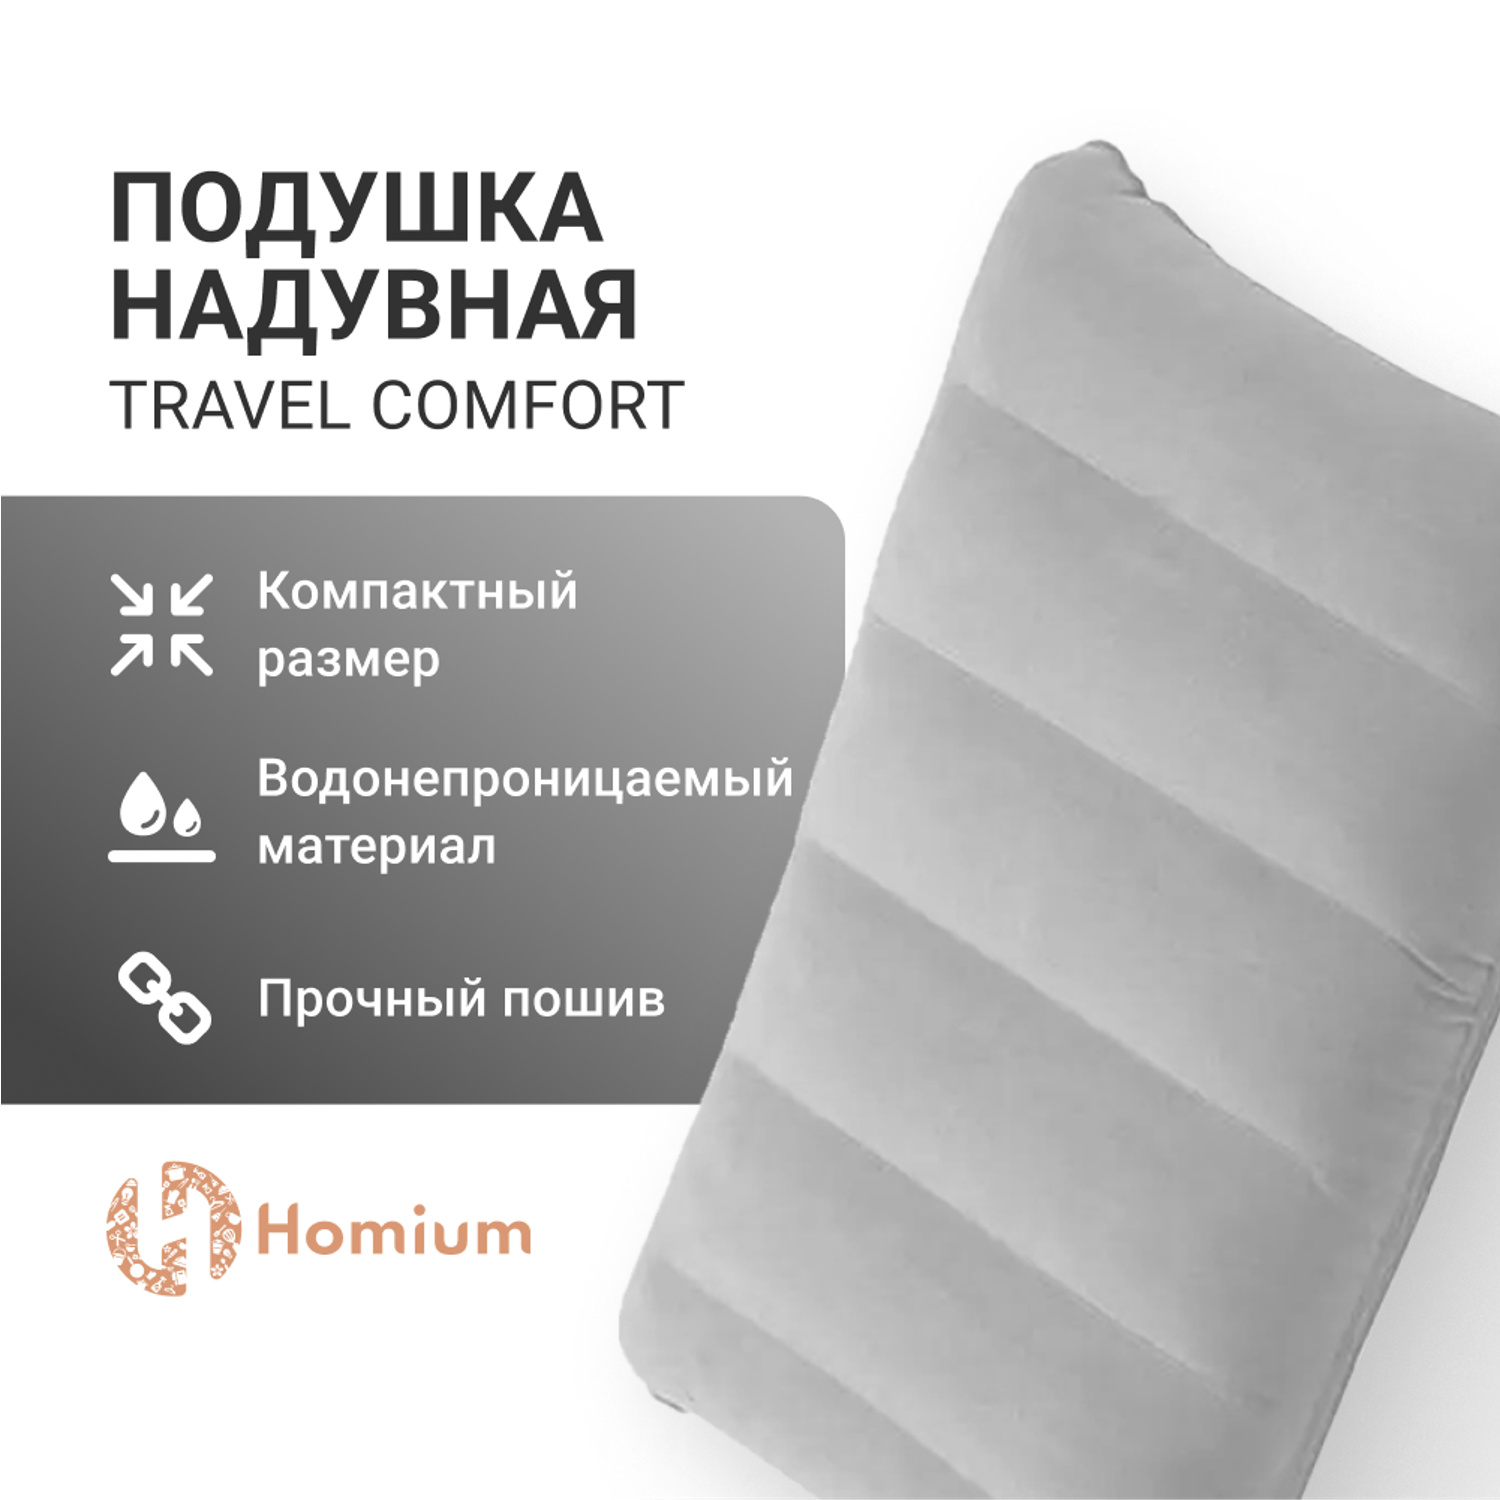 Подушка надувная ZDK Homium Travel Comfort дорожная цвет серый - фото 6